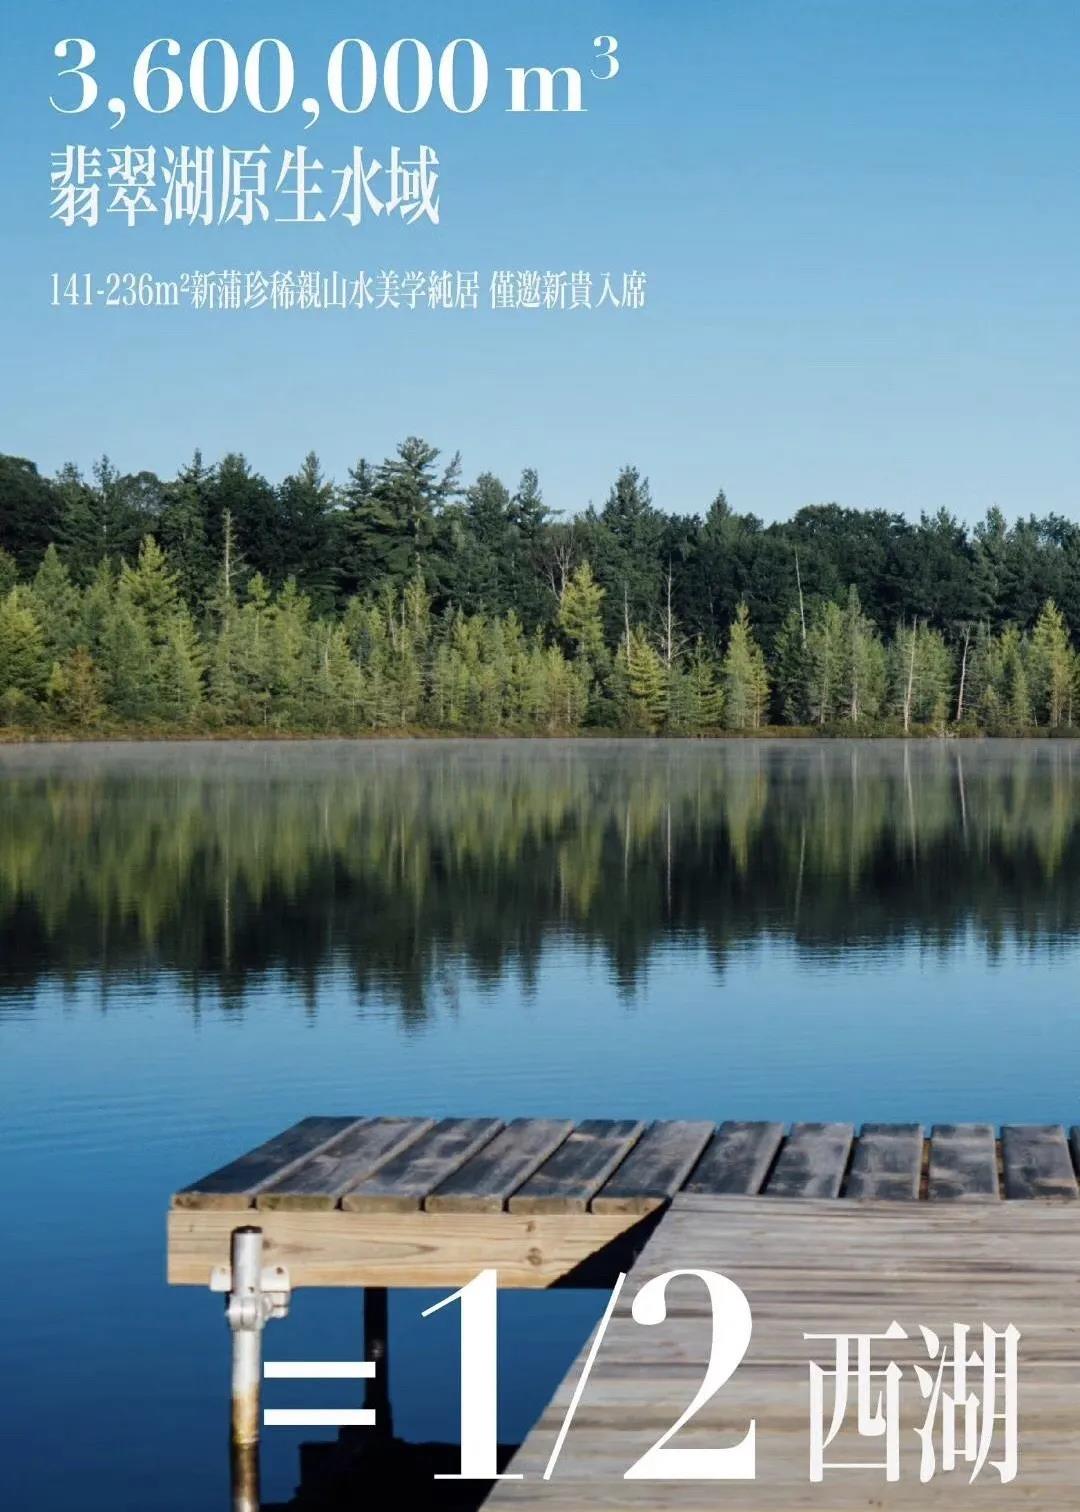 「天辰·景界」户型解读No.1︱邂逅山环水抱的空间寓言-中国网地产